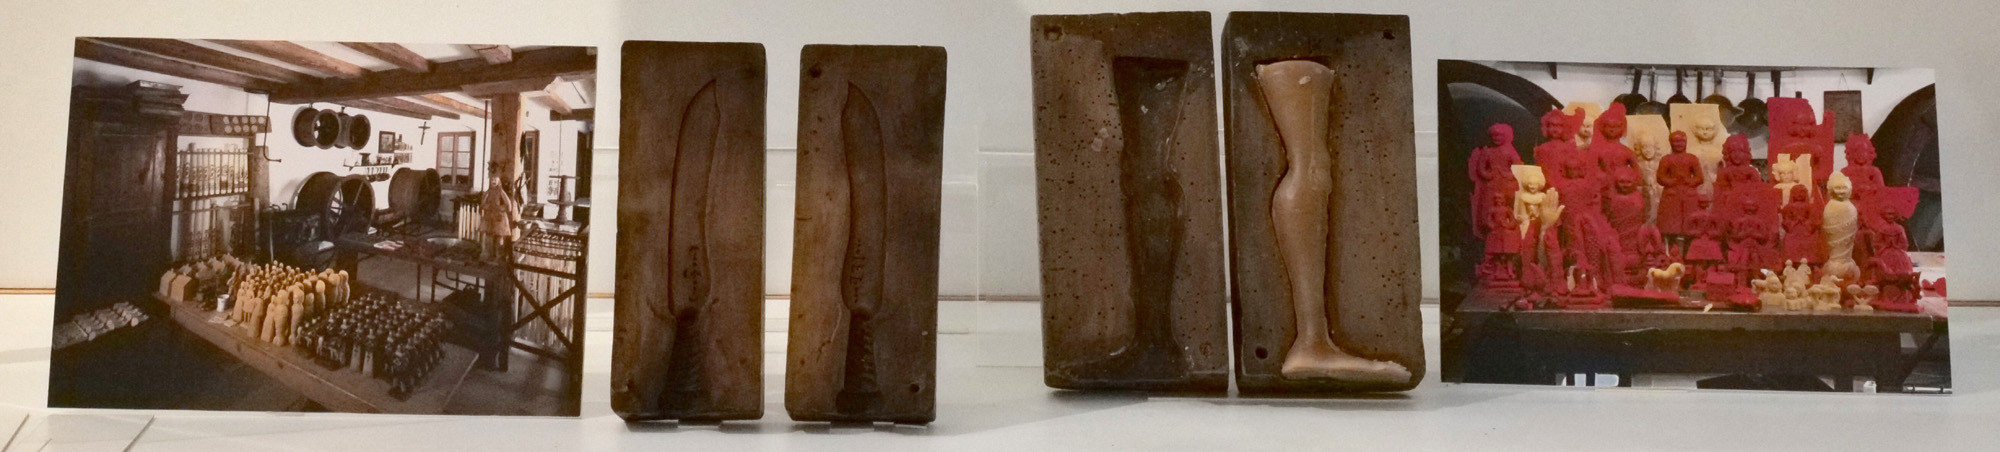 Von links nach rechts in der Vitrine: ein Werkstattfoto, Modelform für ein Messer, Modelform für ein Bein, Gruppenfoto von roten und haurfarbenen Votivabgüssen